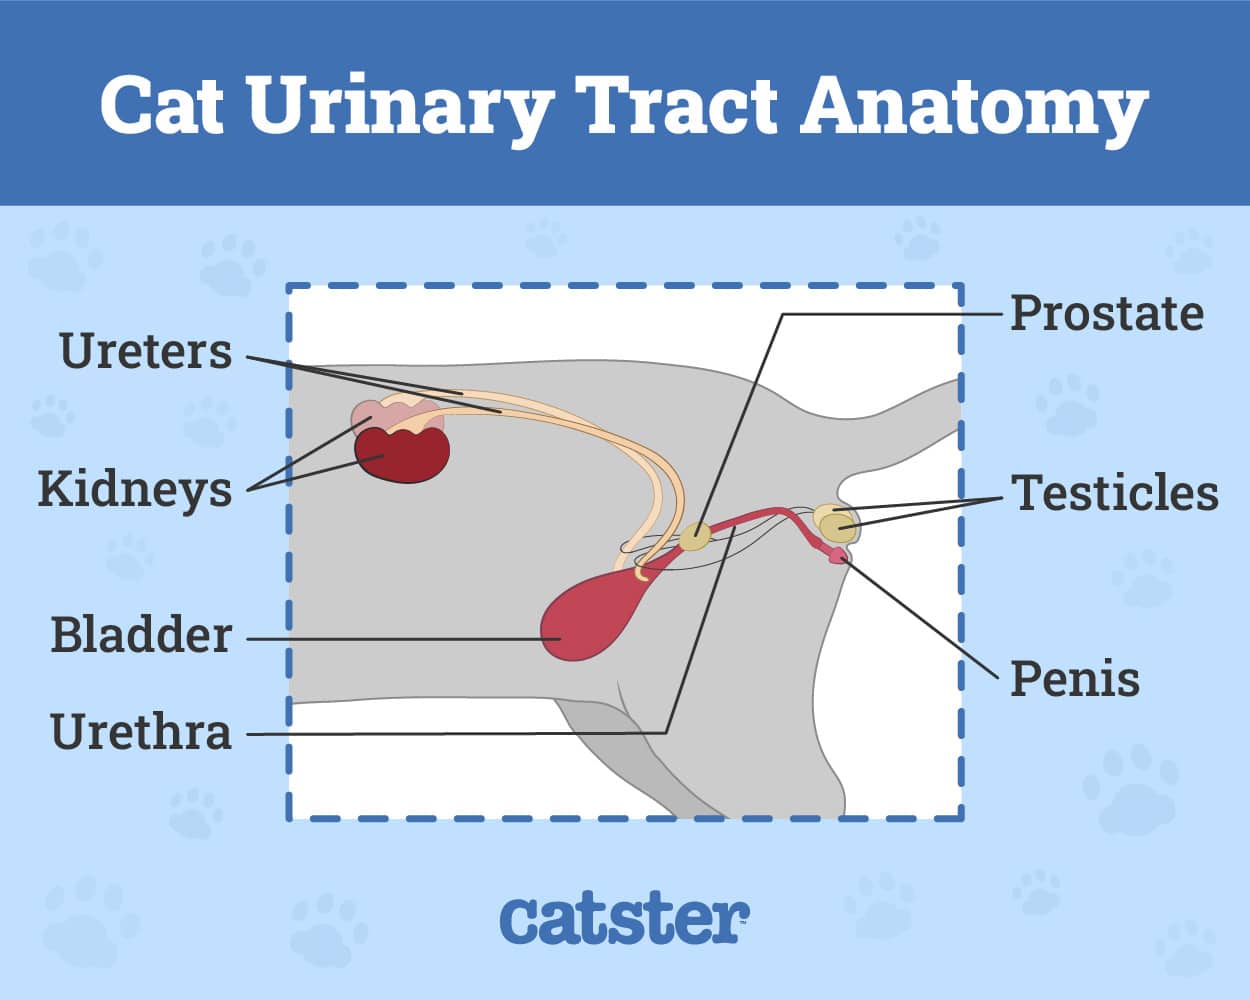 Cat urinary tract anatomy